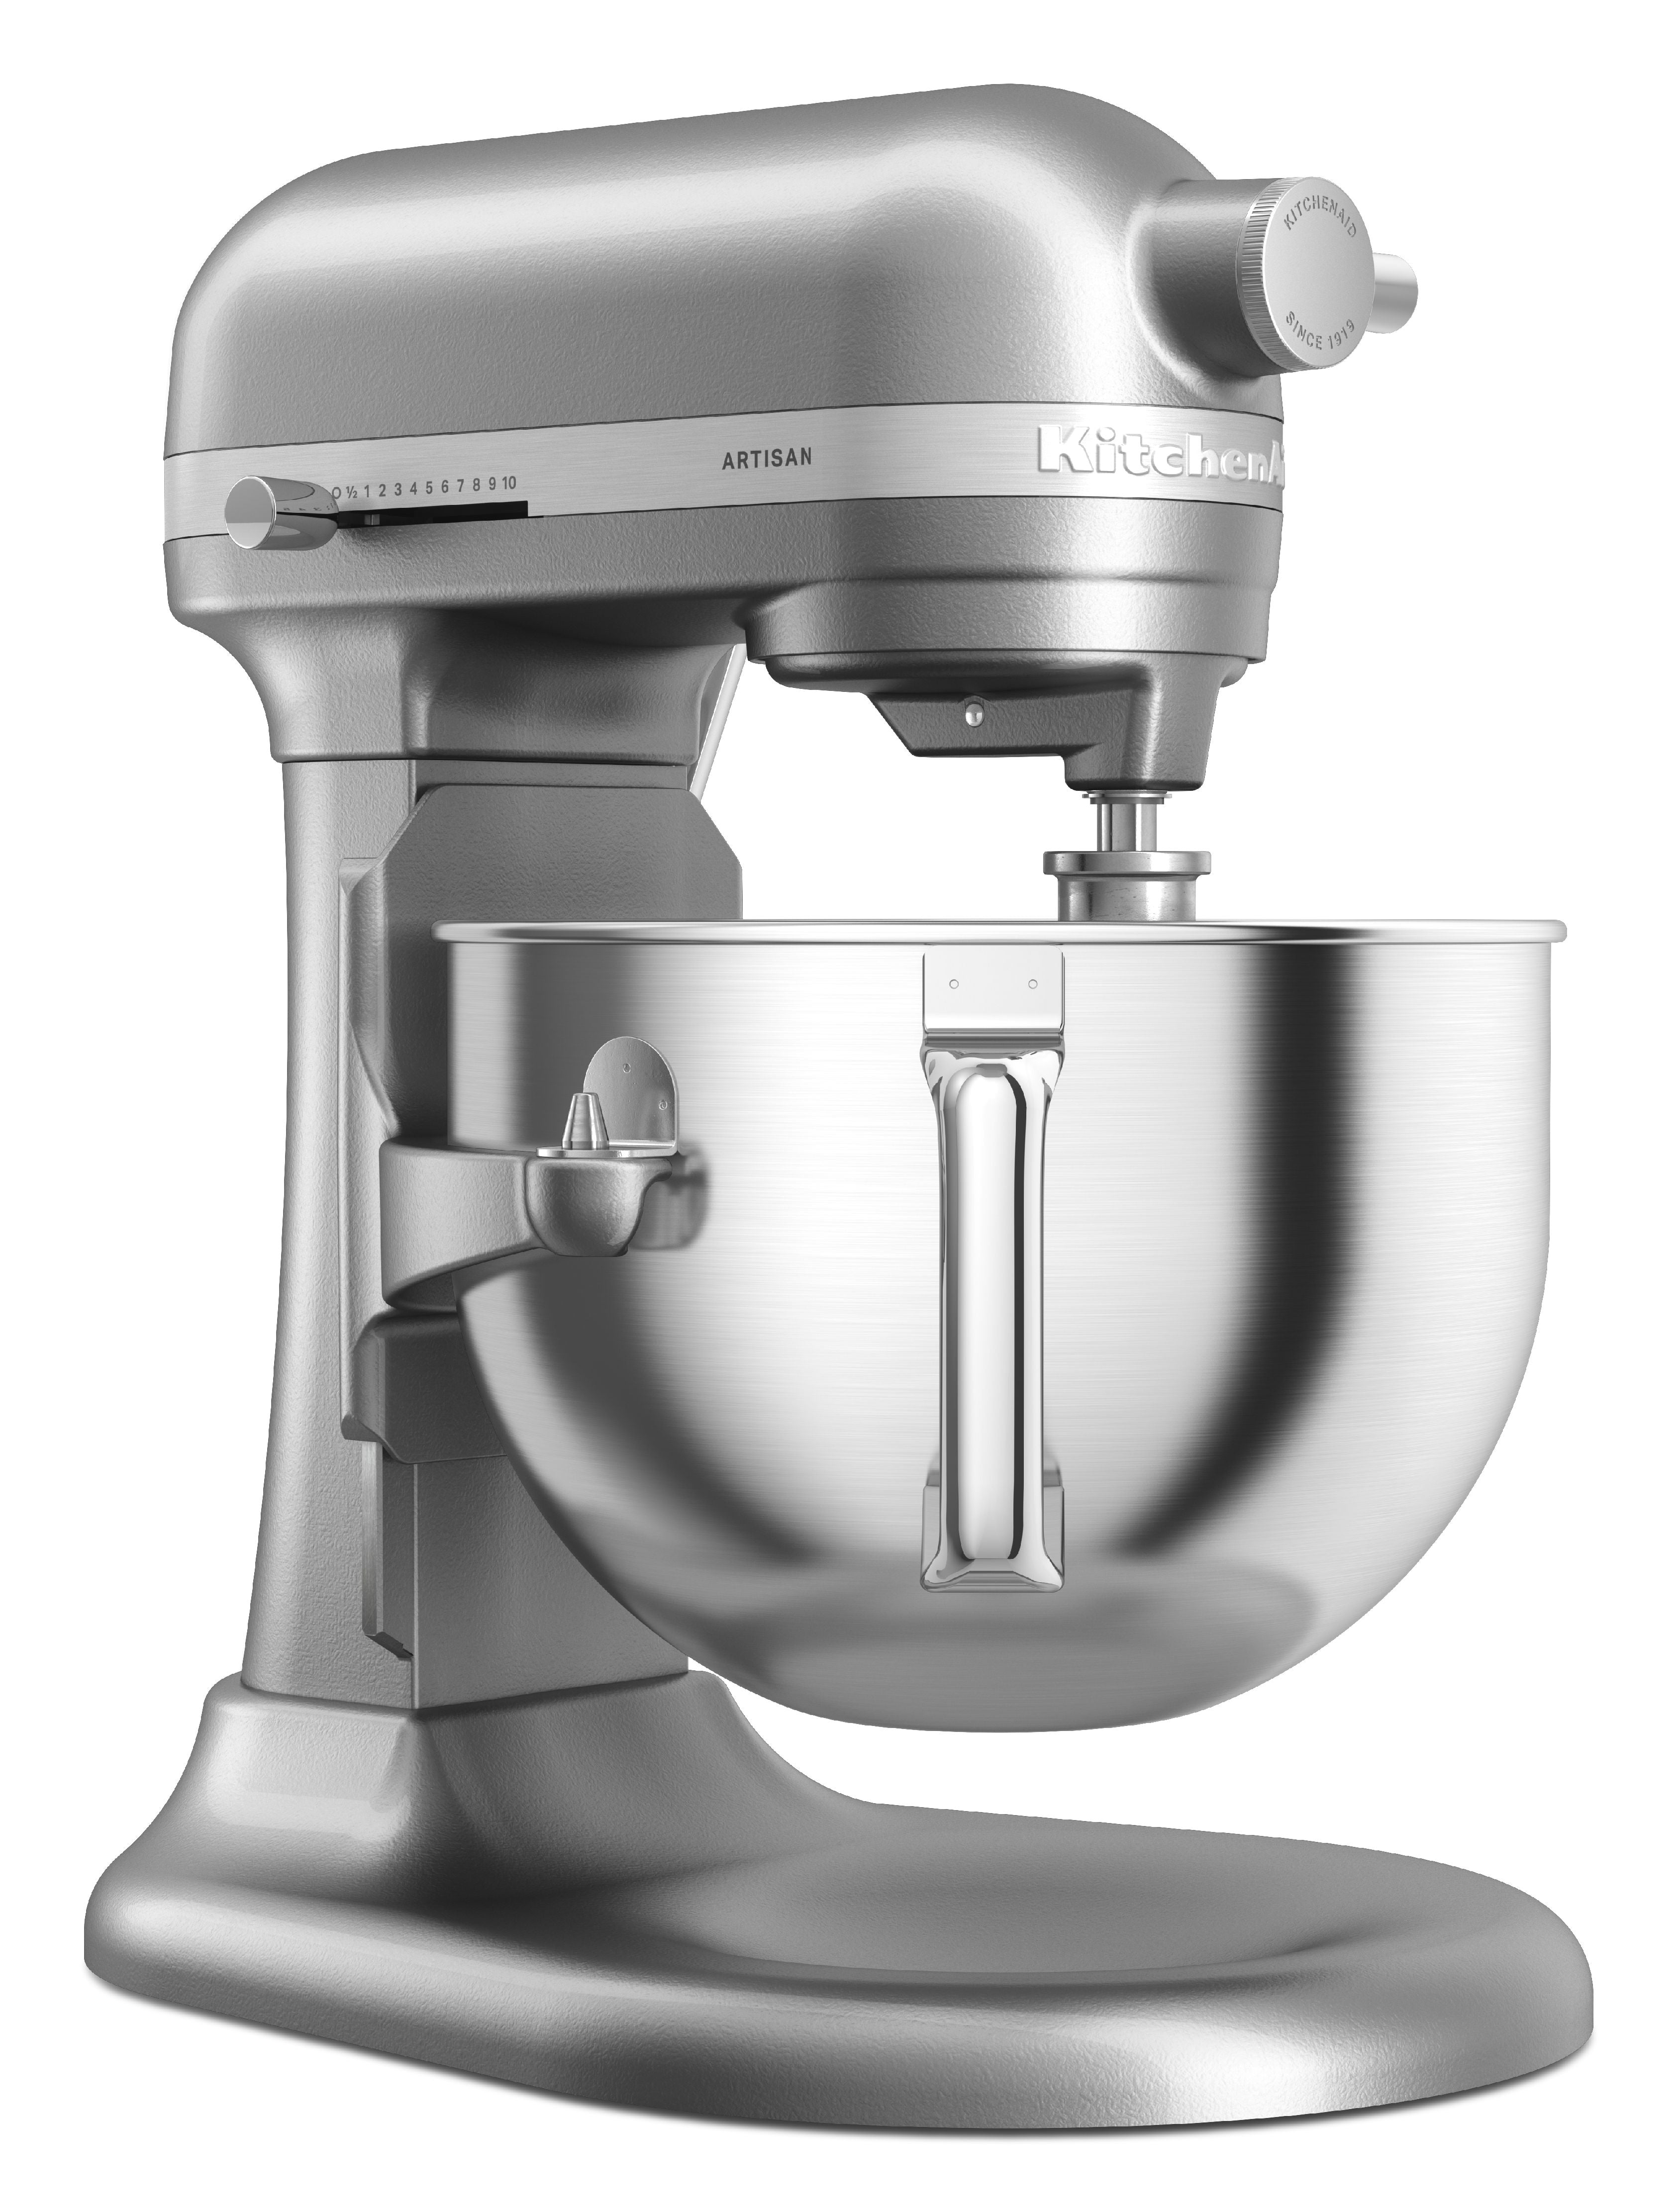 Køkkenhjælp Artisan Bowl Lift Stand Mixer 5.6 L, Contour Silver